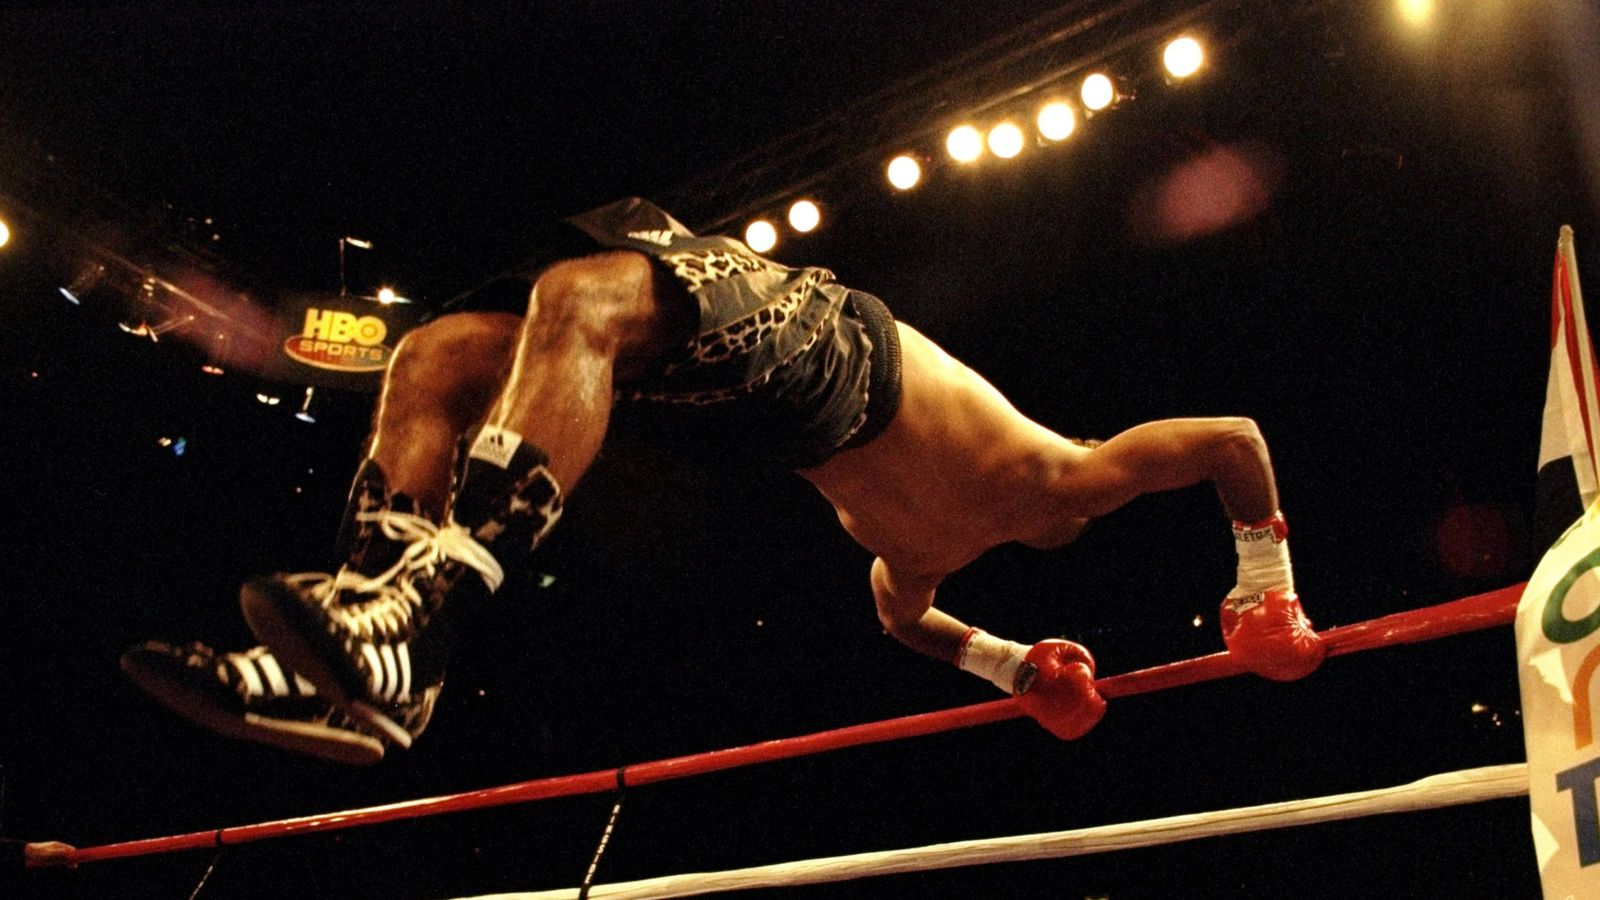 Boxing News: Ray Mancini on watching Tyson Fury